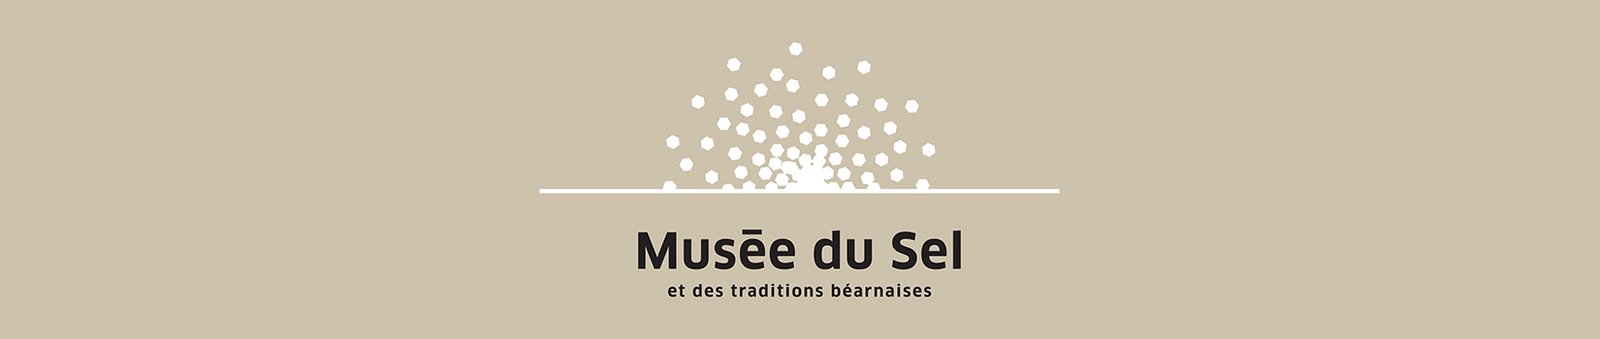 Musée du Sel